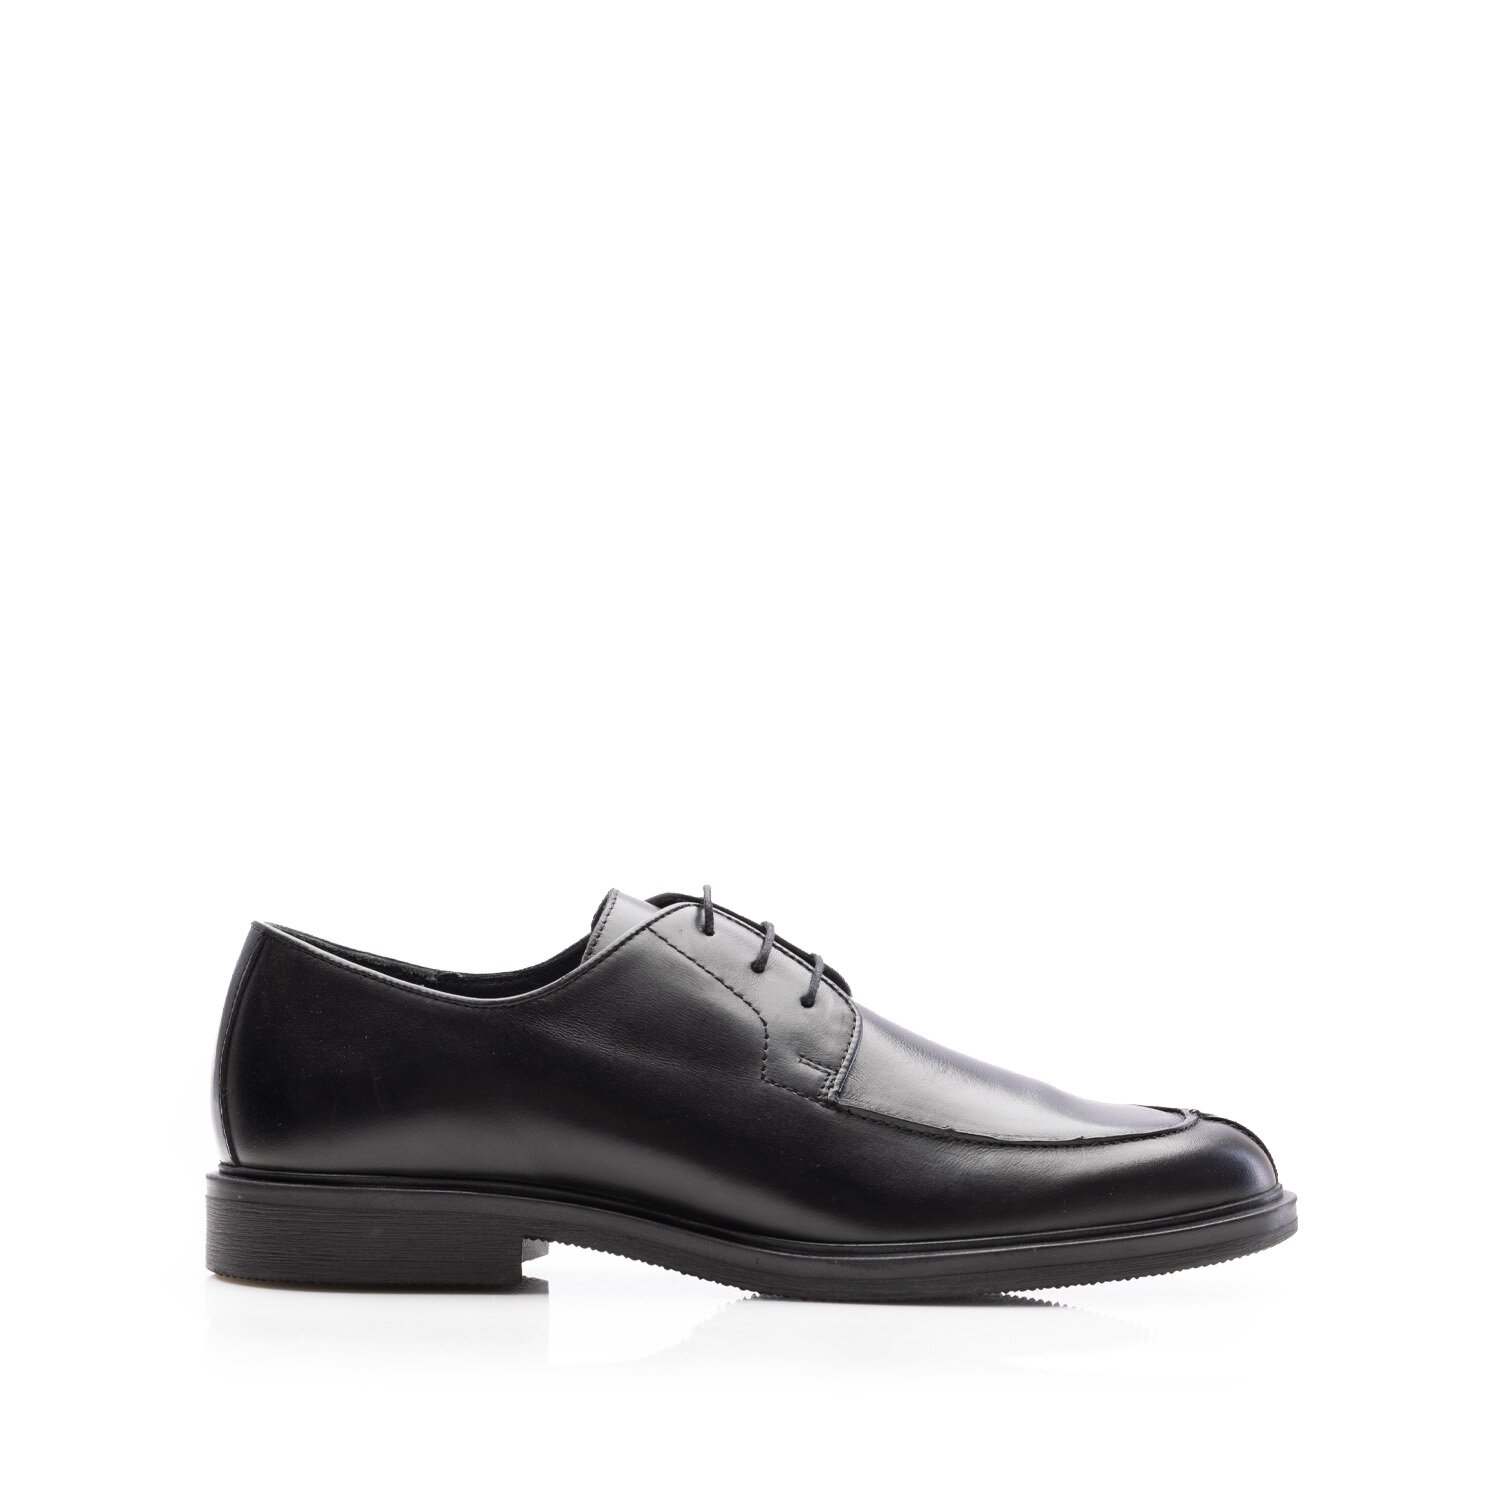 Pantofi casual bărbaț din piele naturală, Leofex - 656 Negru Box